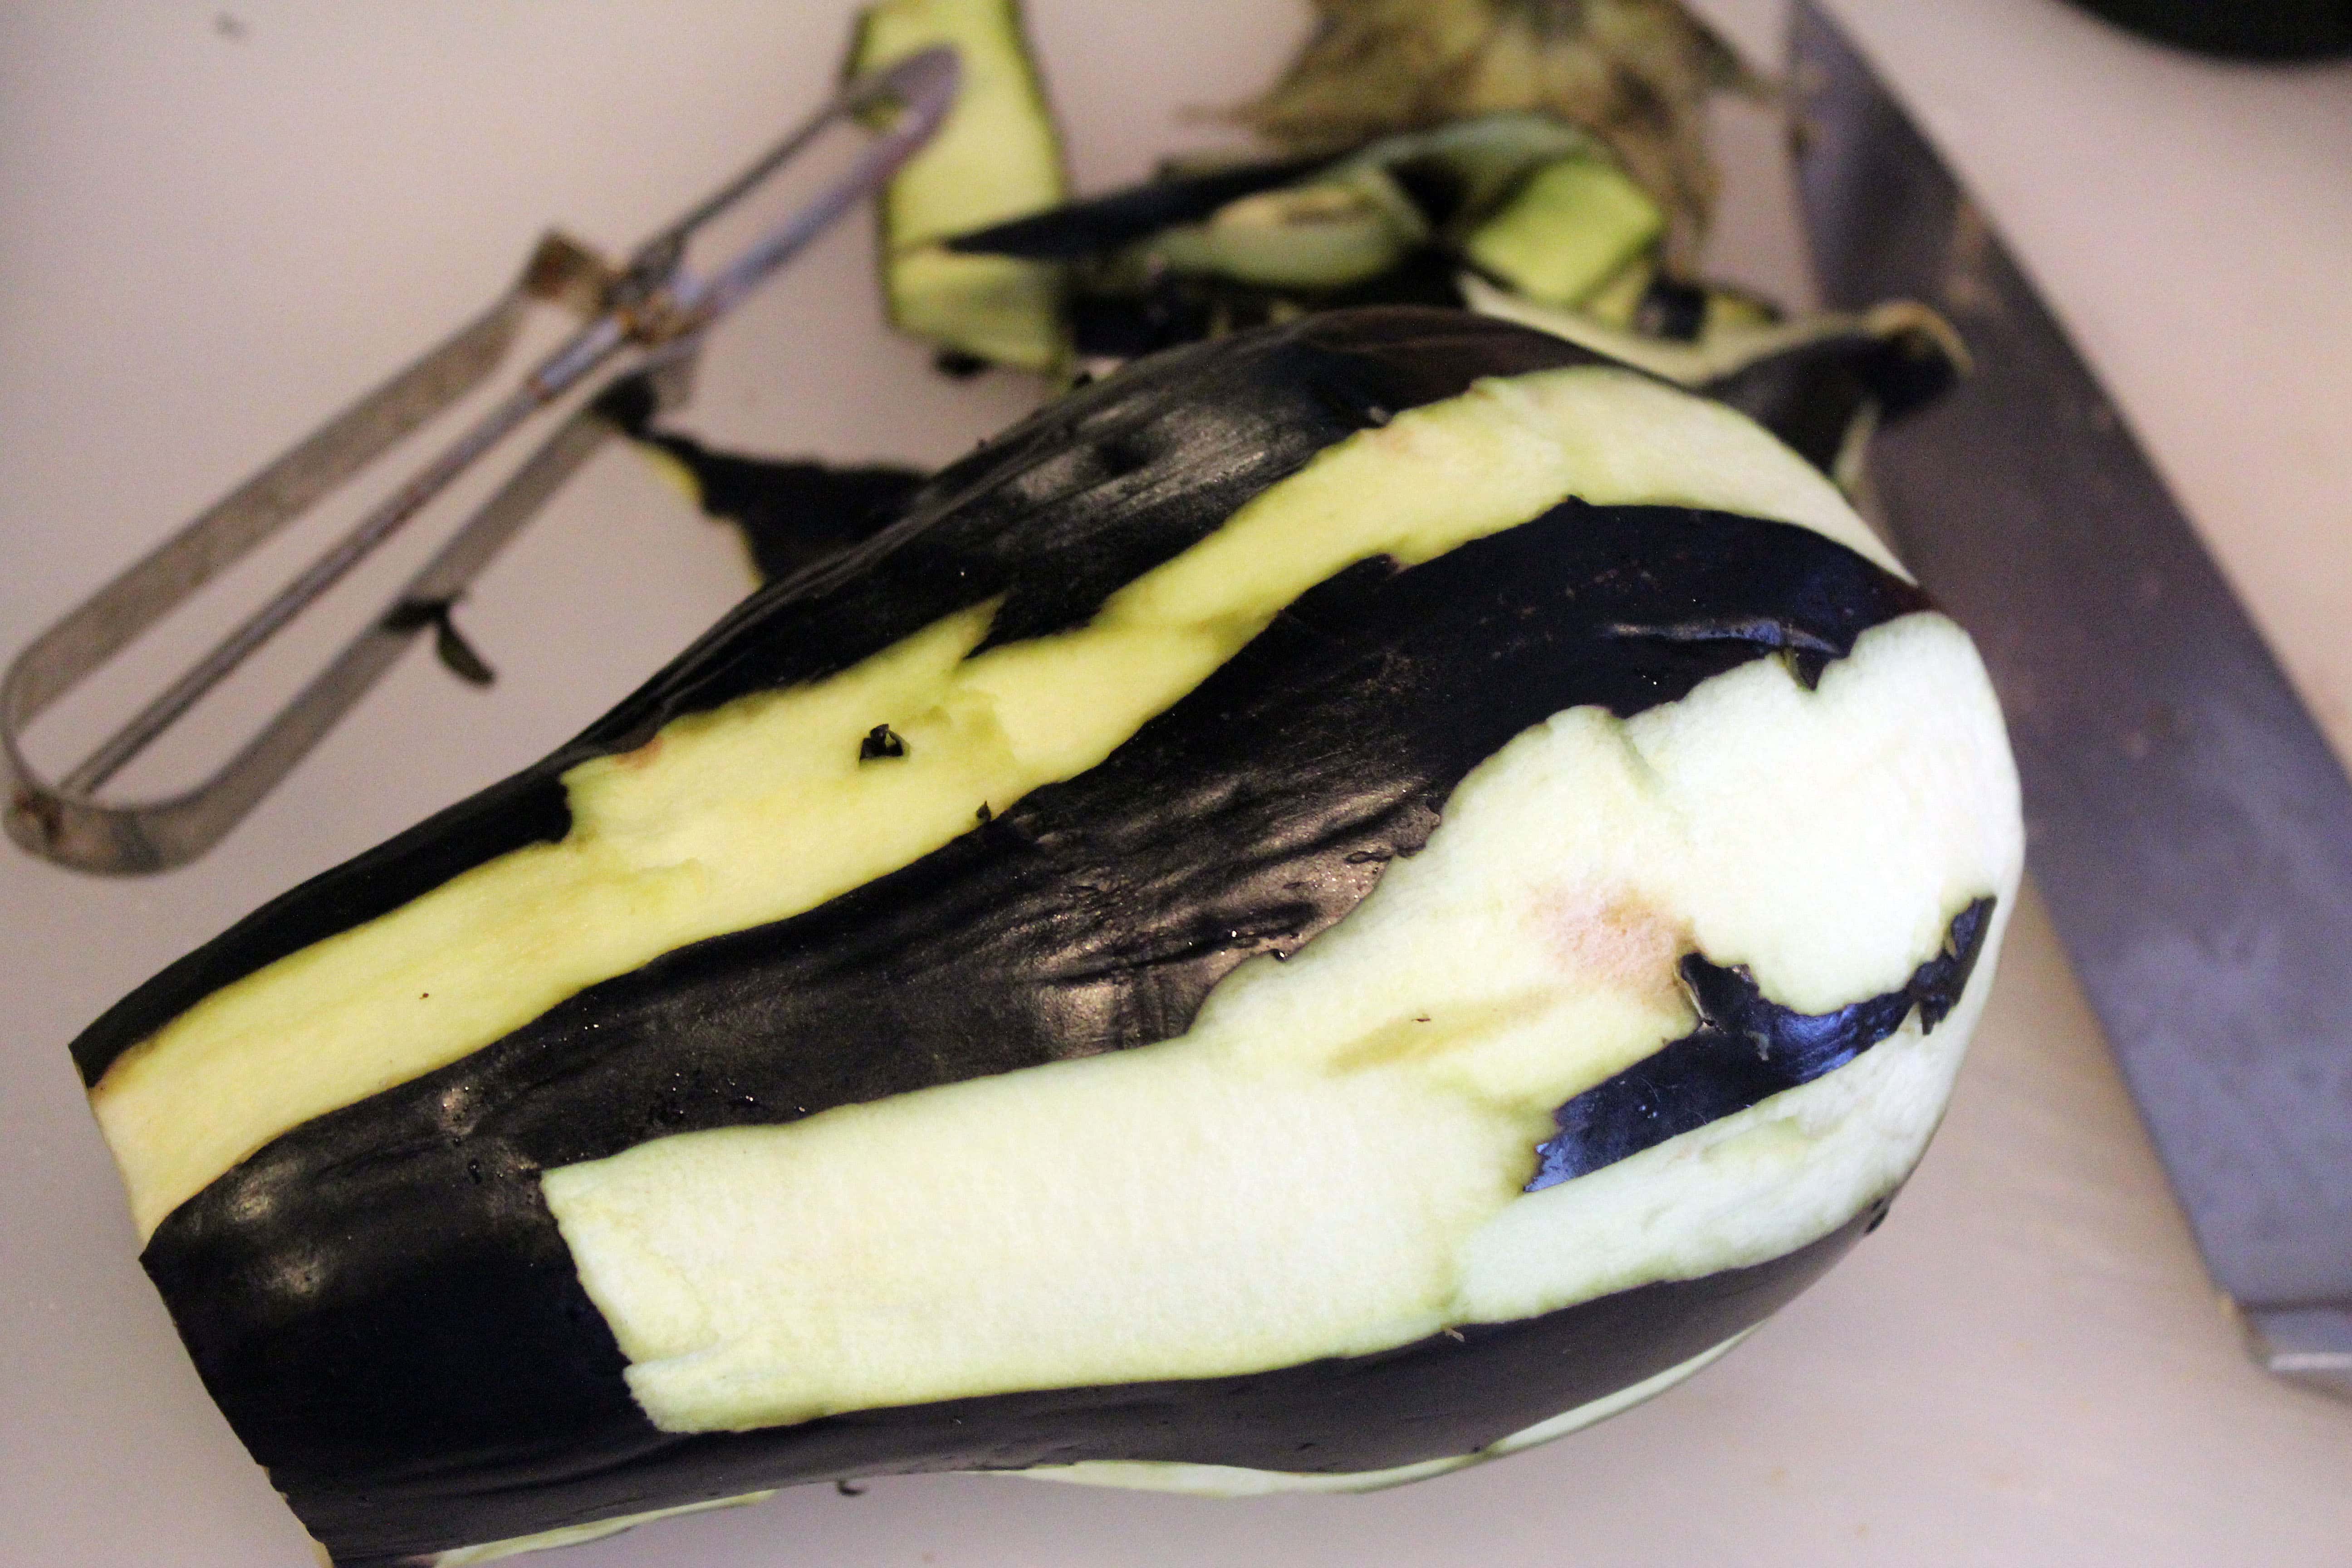 Partially peel eggplant